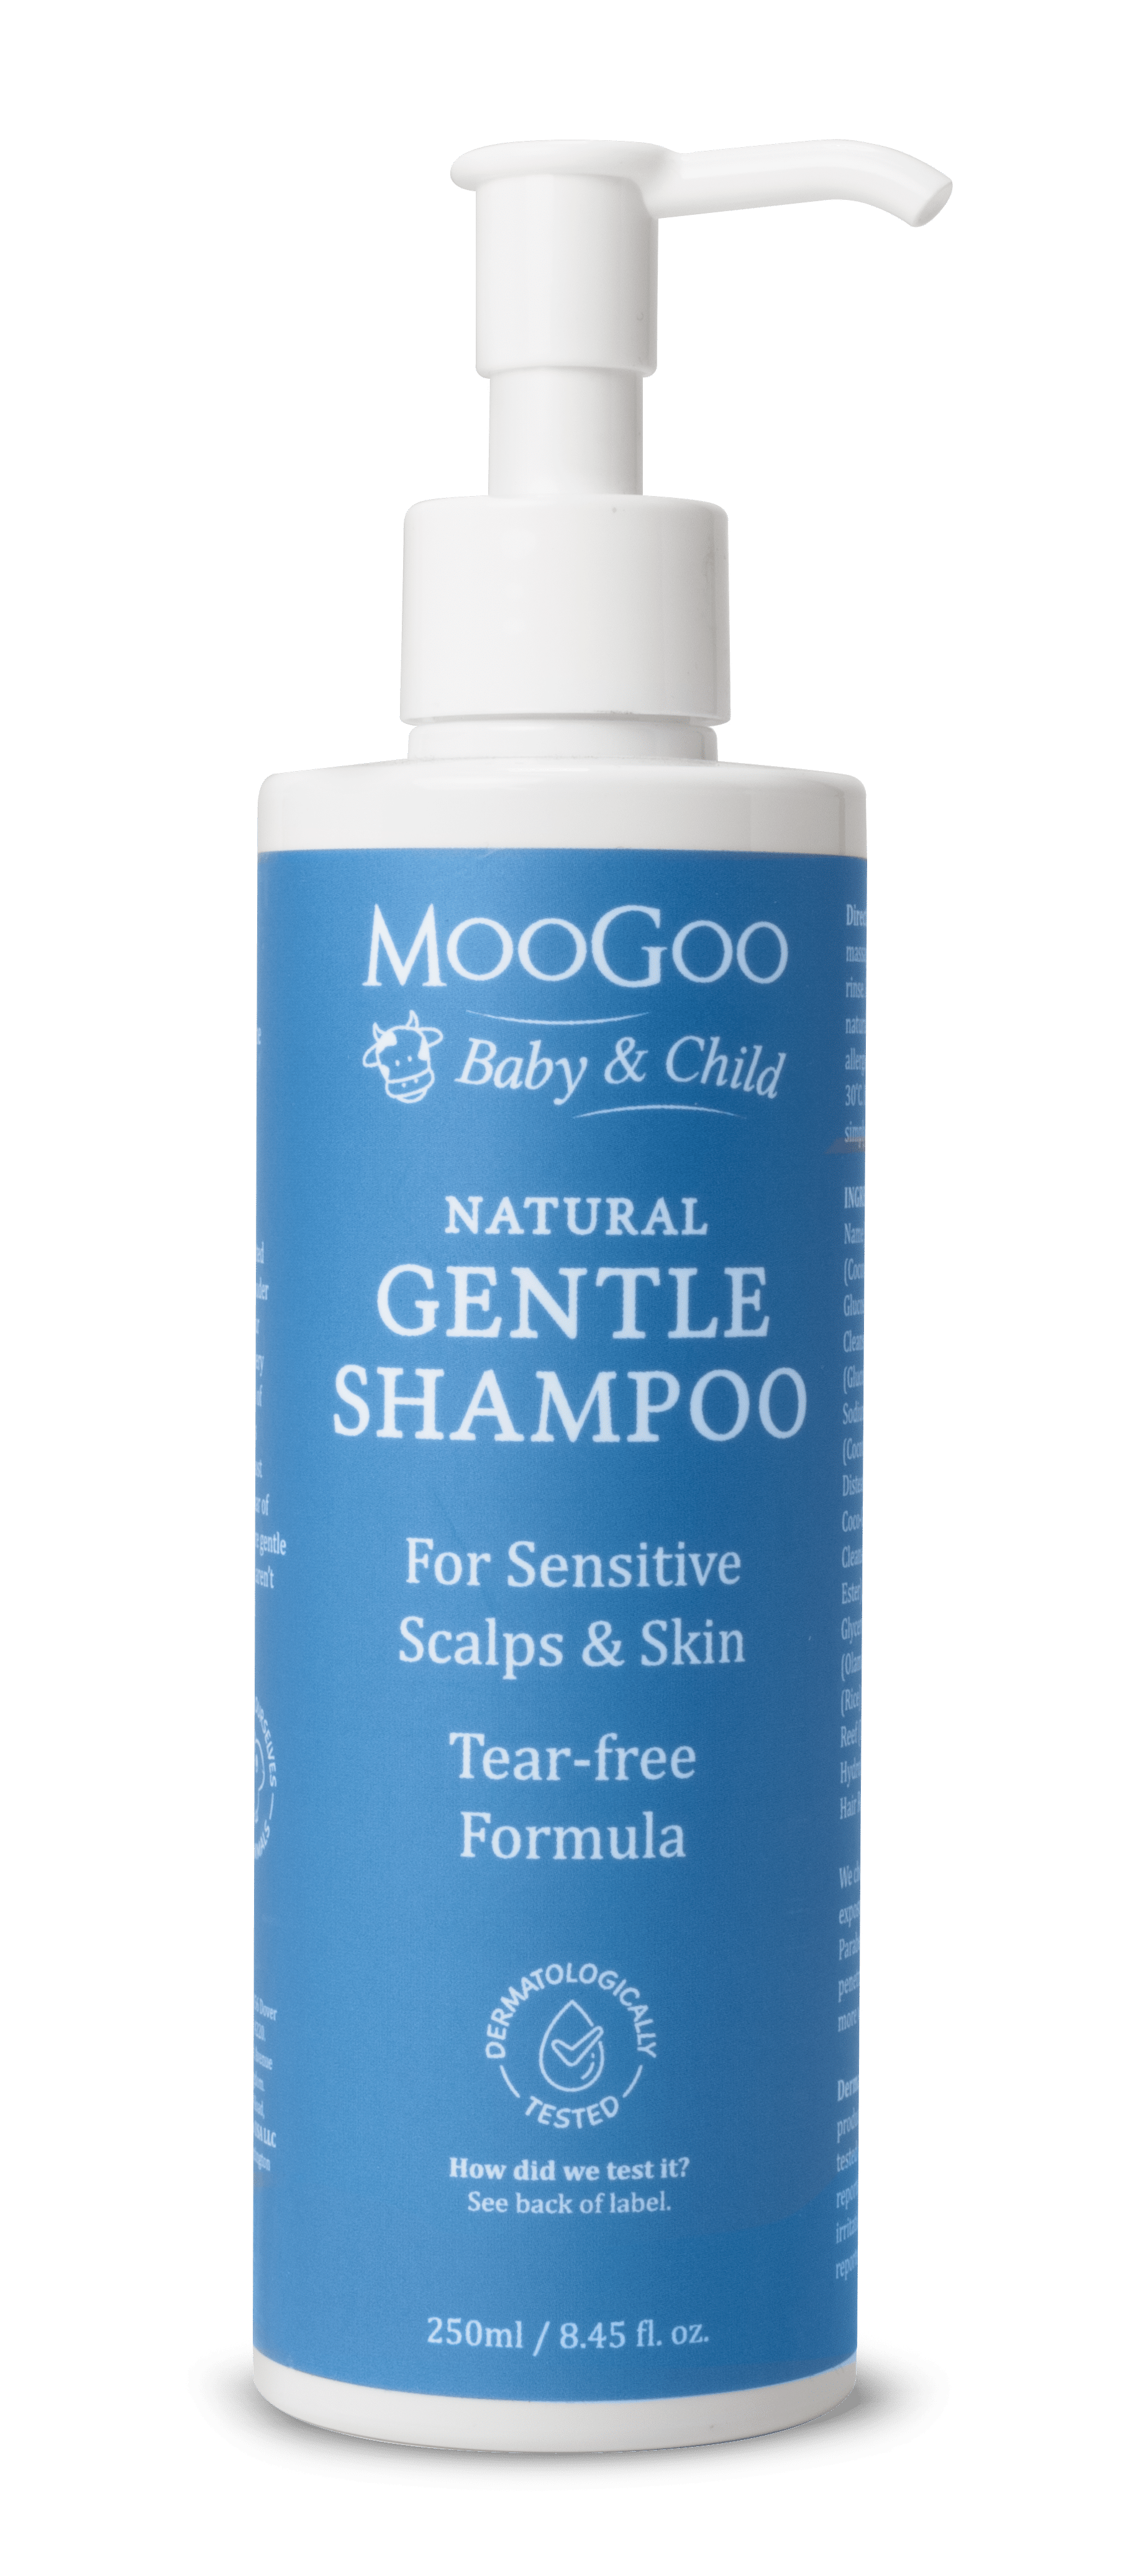 moogoo baby shampoo